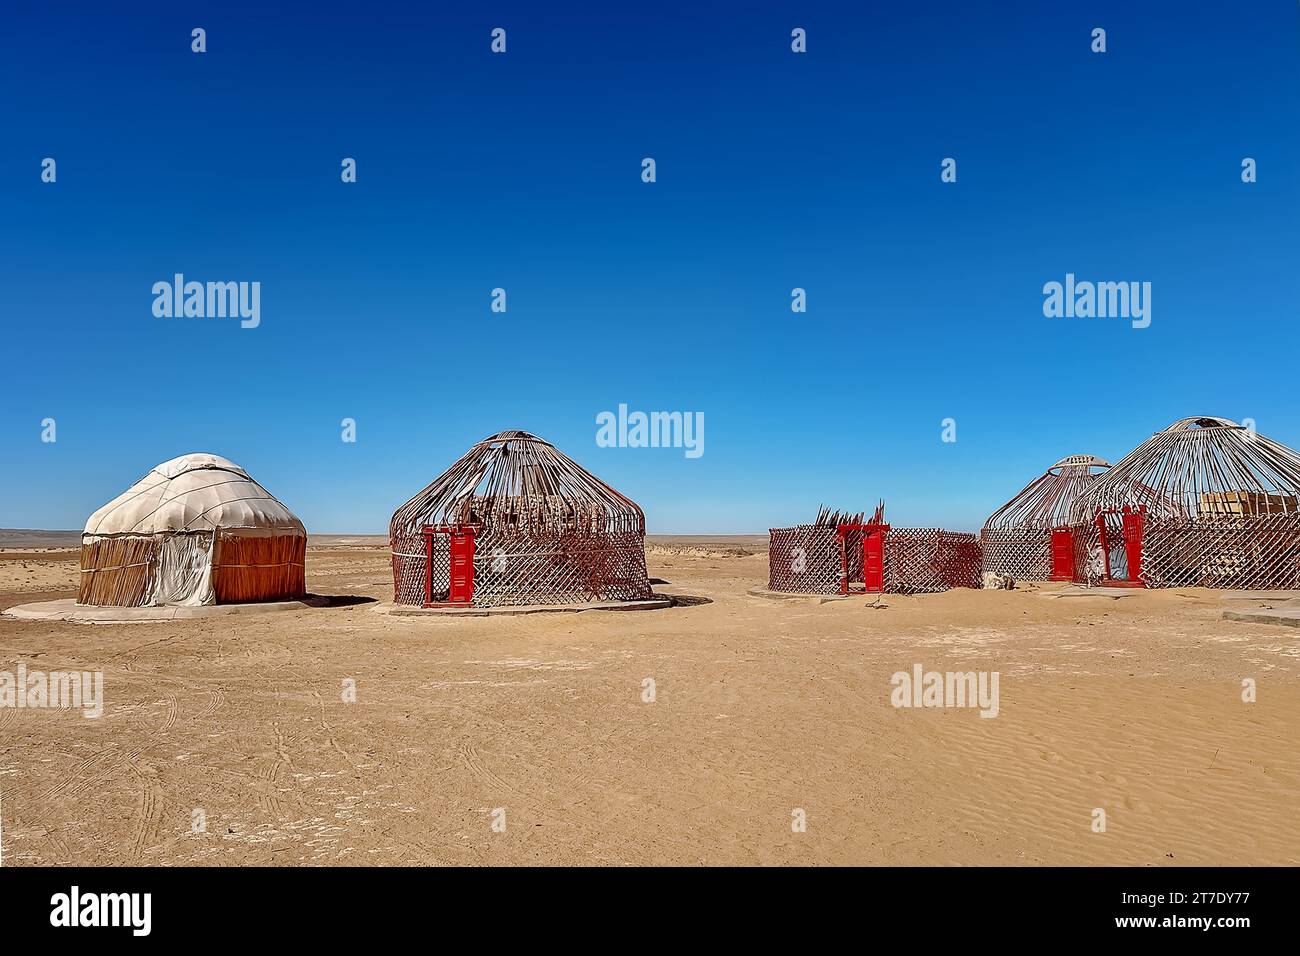 Yurt settlement in the desert, Kysylkum desert, uzbekistan Stock Photo